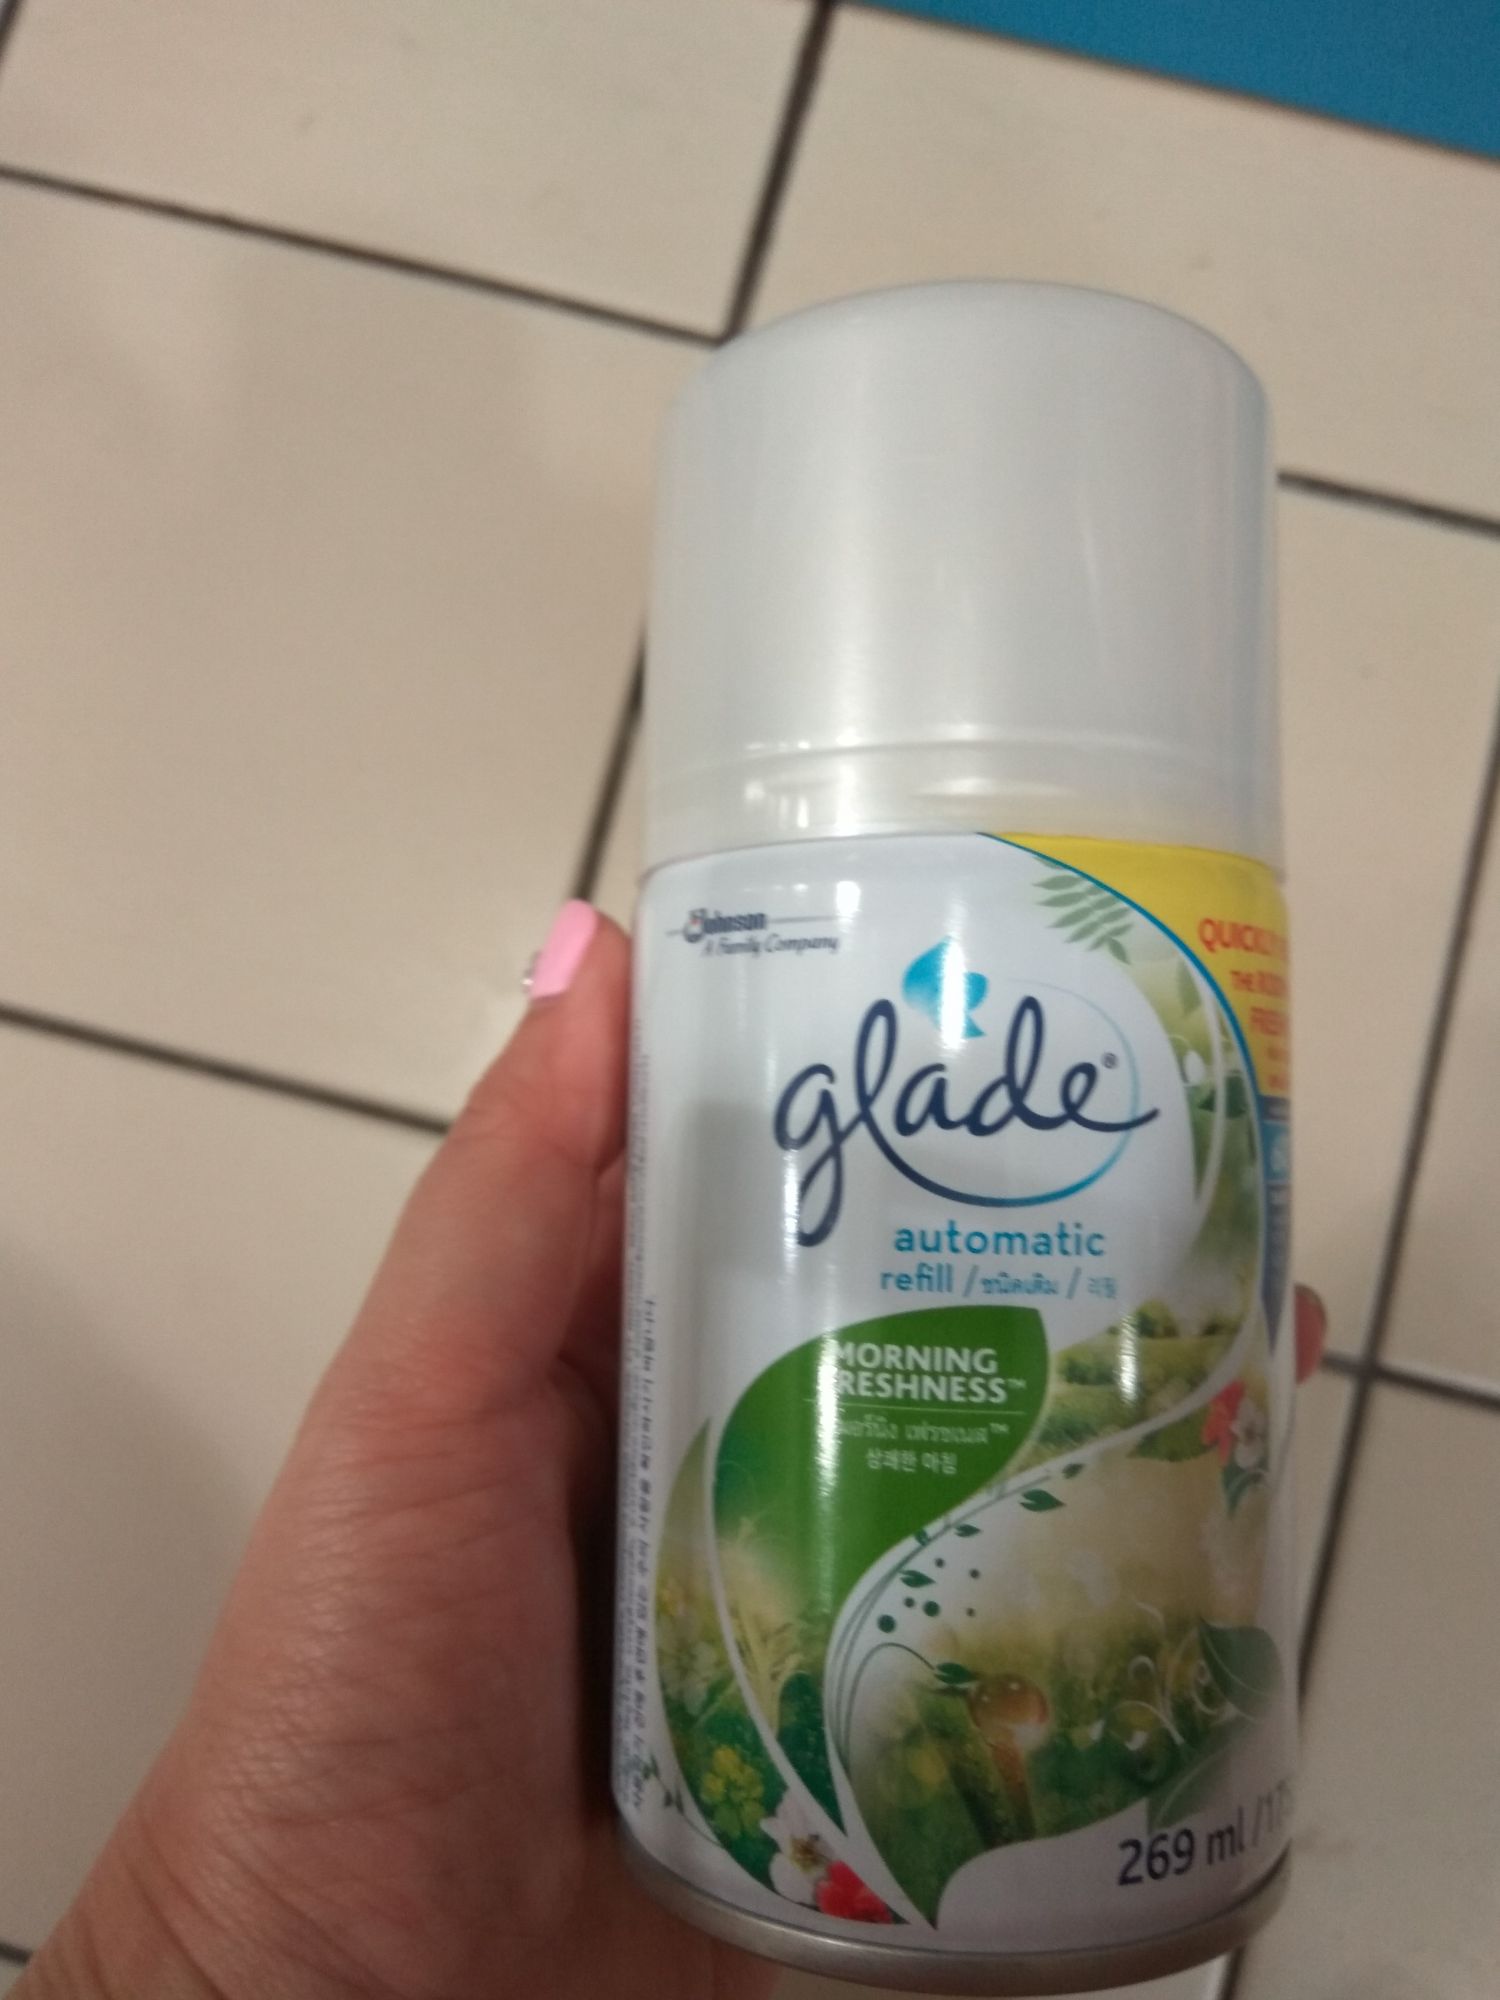 glade automatic spray refill sds